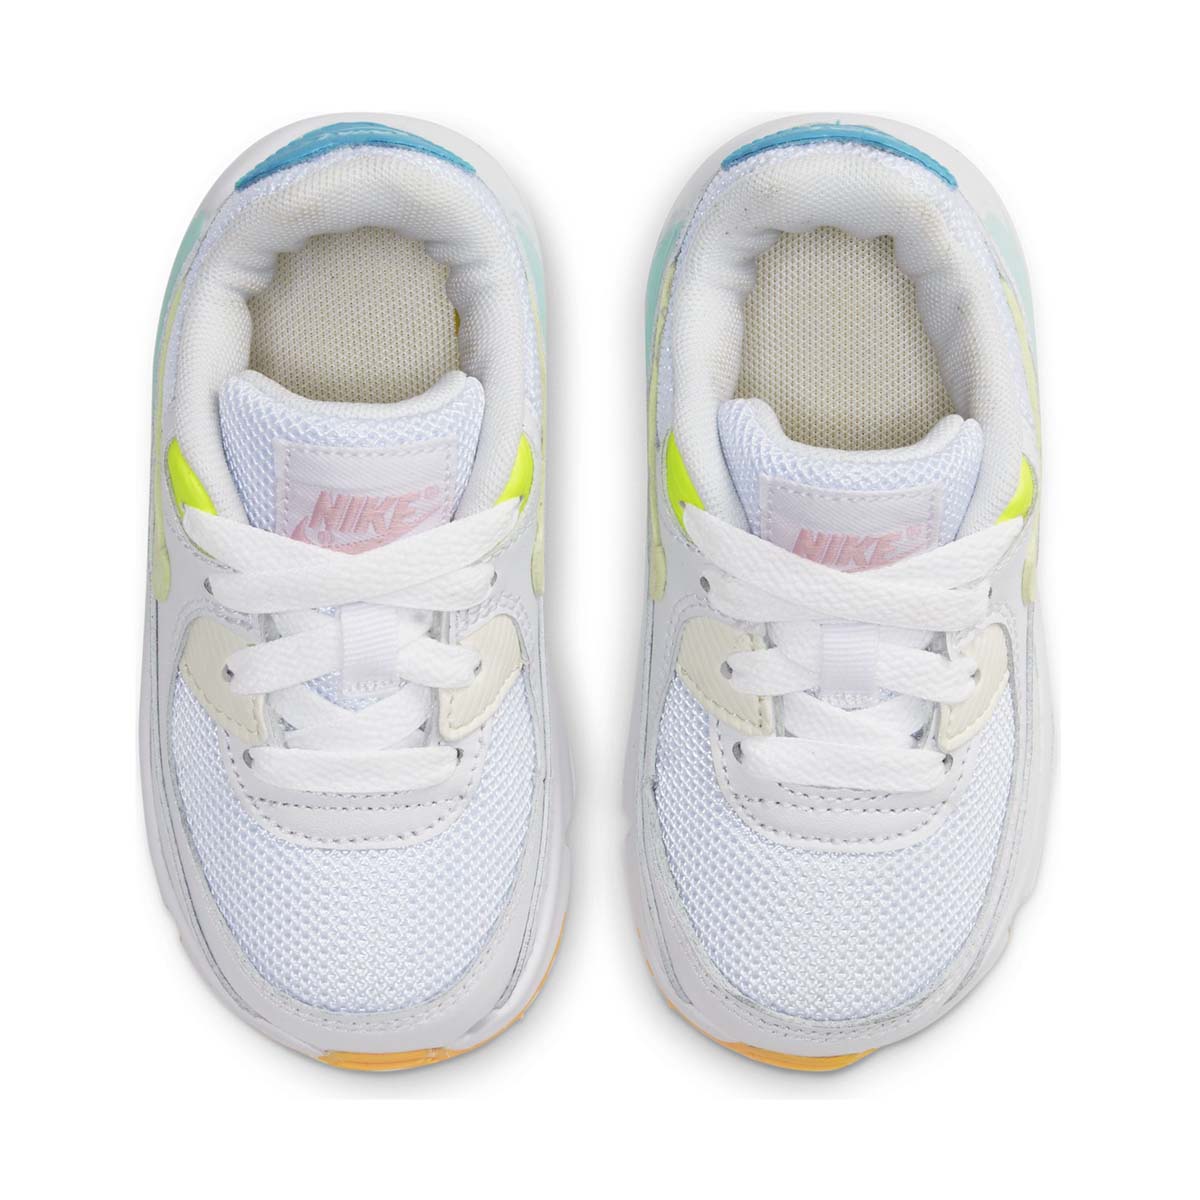 Toddler Nike Air Max 90